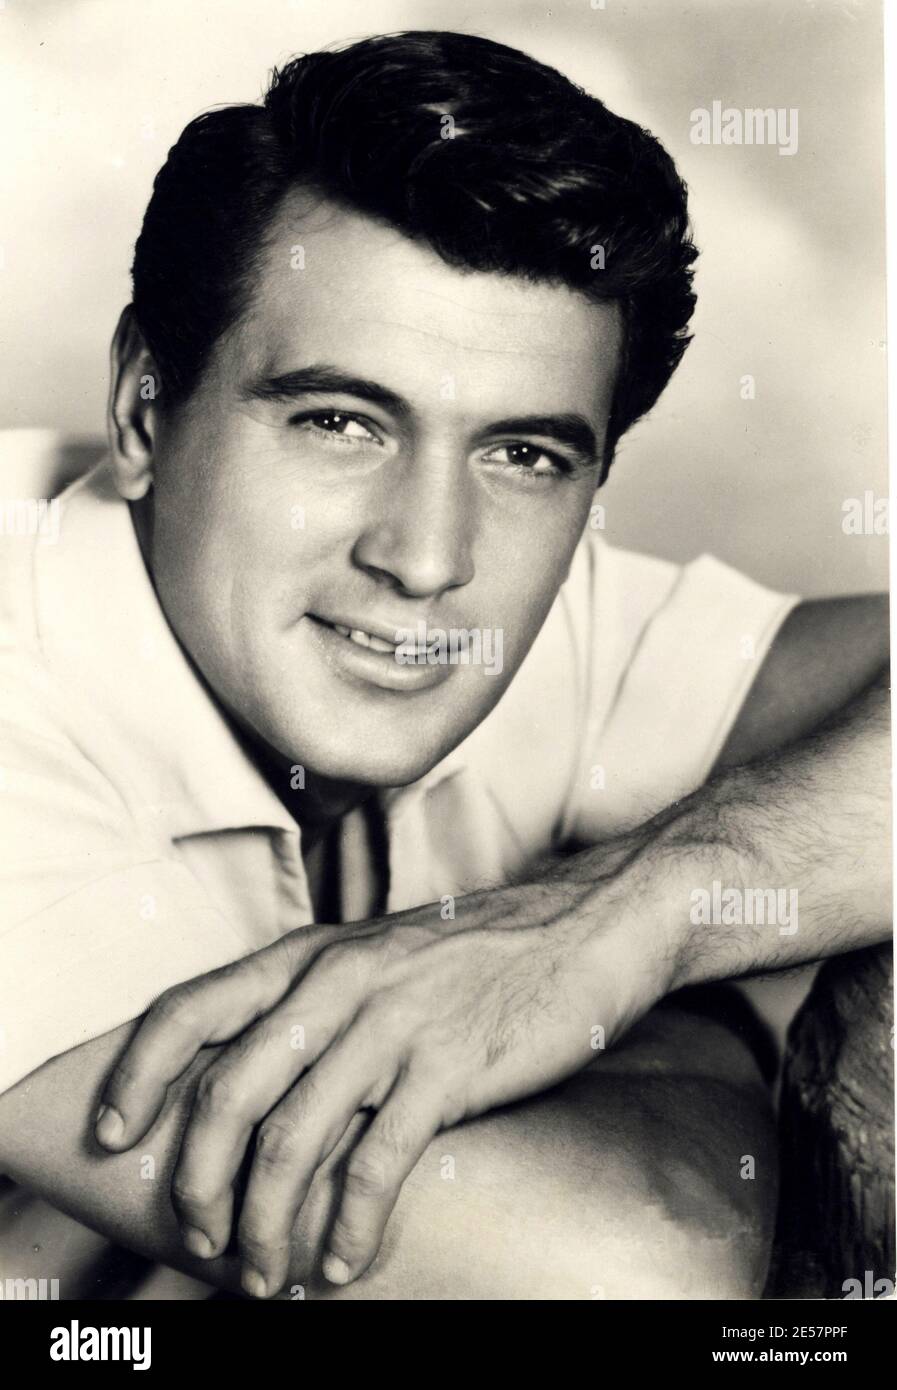 1954 c., USA : der Filmschauspieler ROCK HUDSON ( 1925 - 1985 ) - KINO - FILM - Attore - ritratto - Portrait - hunk - smile - sorriso mano - Hand - tot für AIDS - A.I.D.S. - HIV Krankheit - Beefcake - camicia bianca - weißes Hemd ---- Archivio GBB Stockfoto